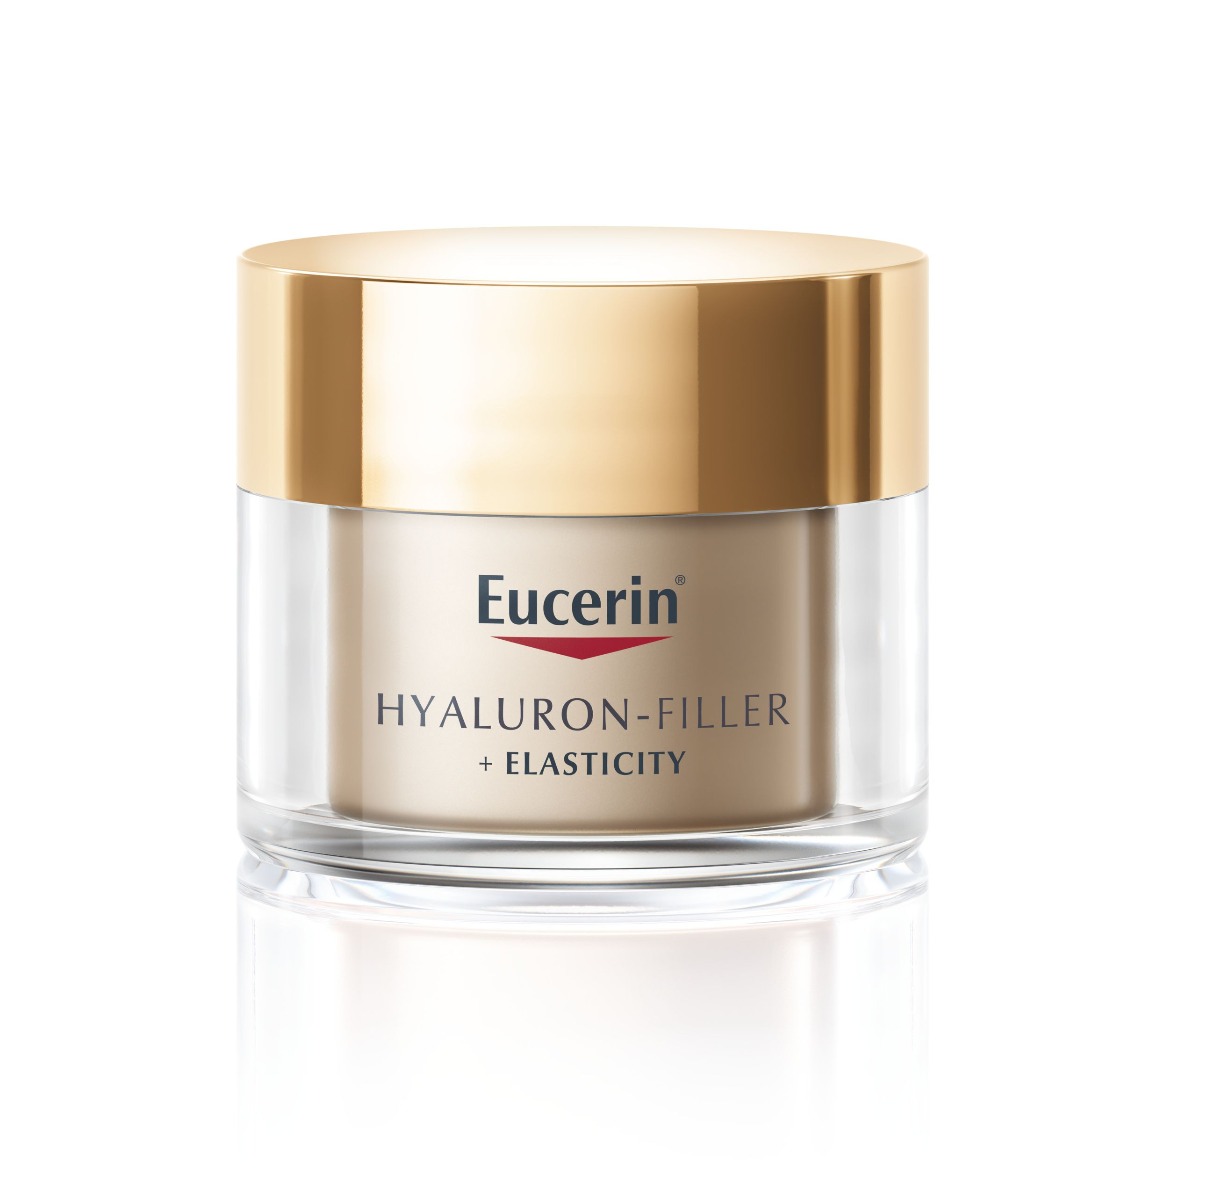 Eucerin Hyaluron-Filler + Elasticity noční krém 50 ml Eucerin